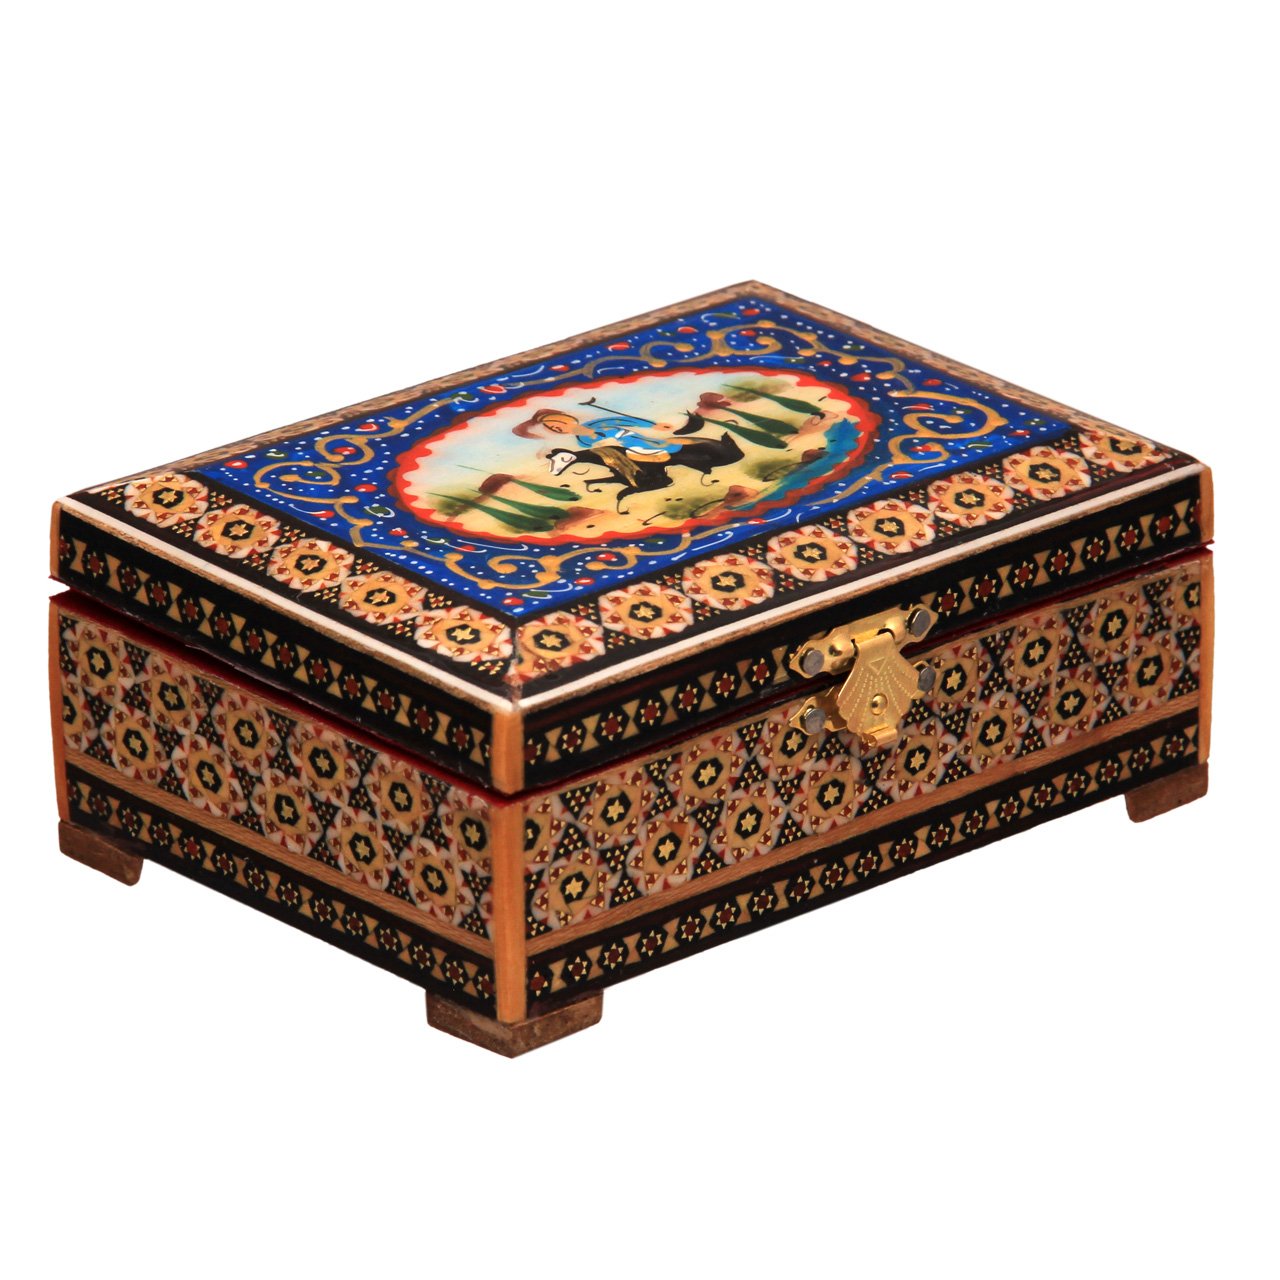 Khatam Inlaid Jewelry box Modelo 70061-7, khatam incrustado custo, khatam embutidos on-line, khatam embutidos vendedores